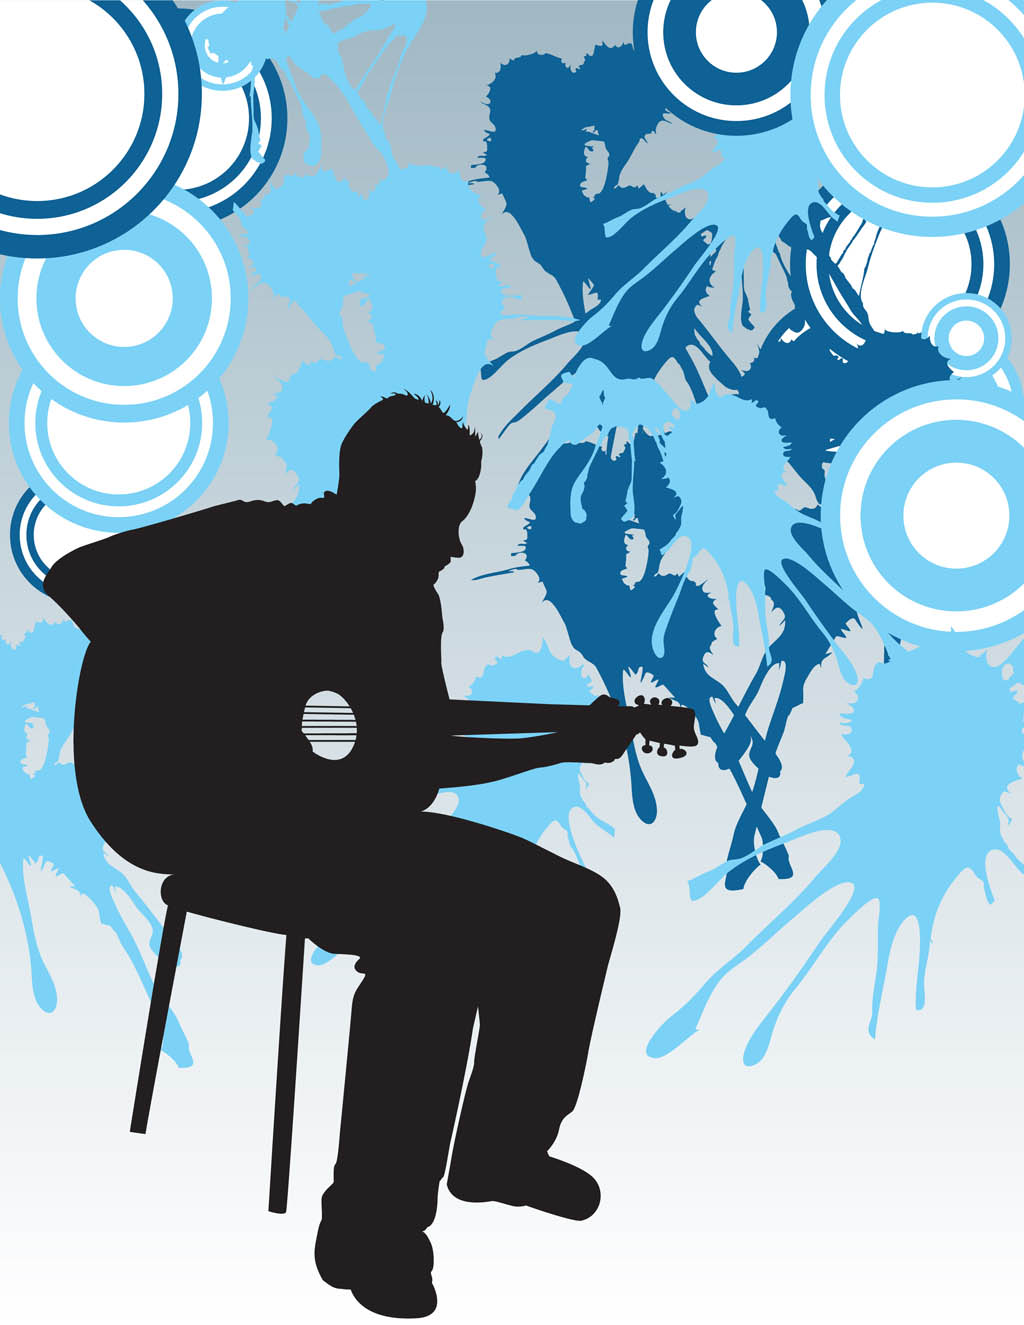 Poster for Sale avec l'œuvre « Médiator de guitare drôle pour gaucher avec  silhouette de guitare » de l'artiste playloud